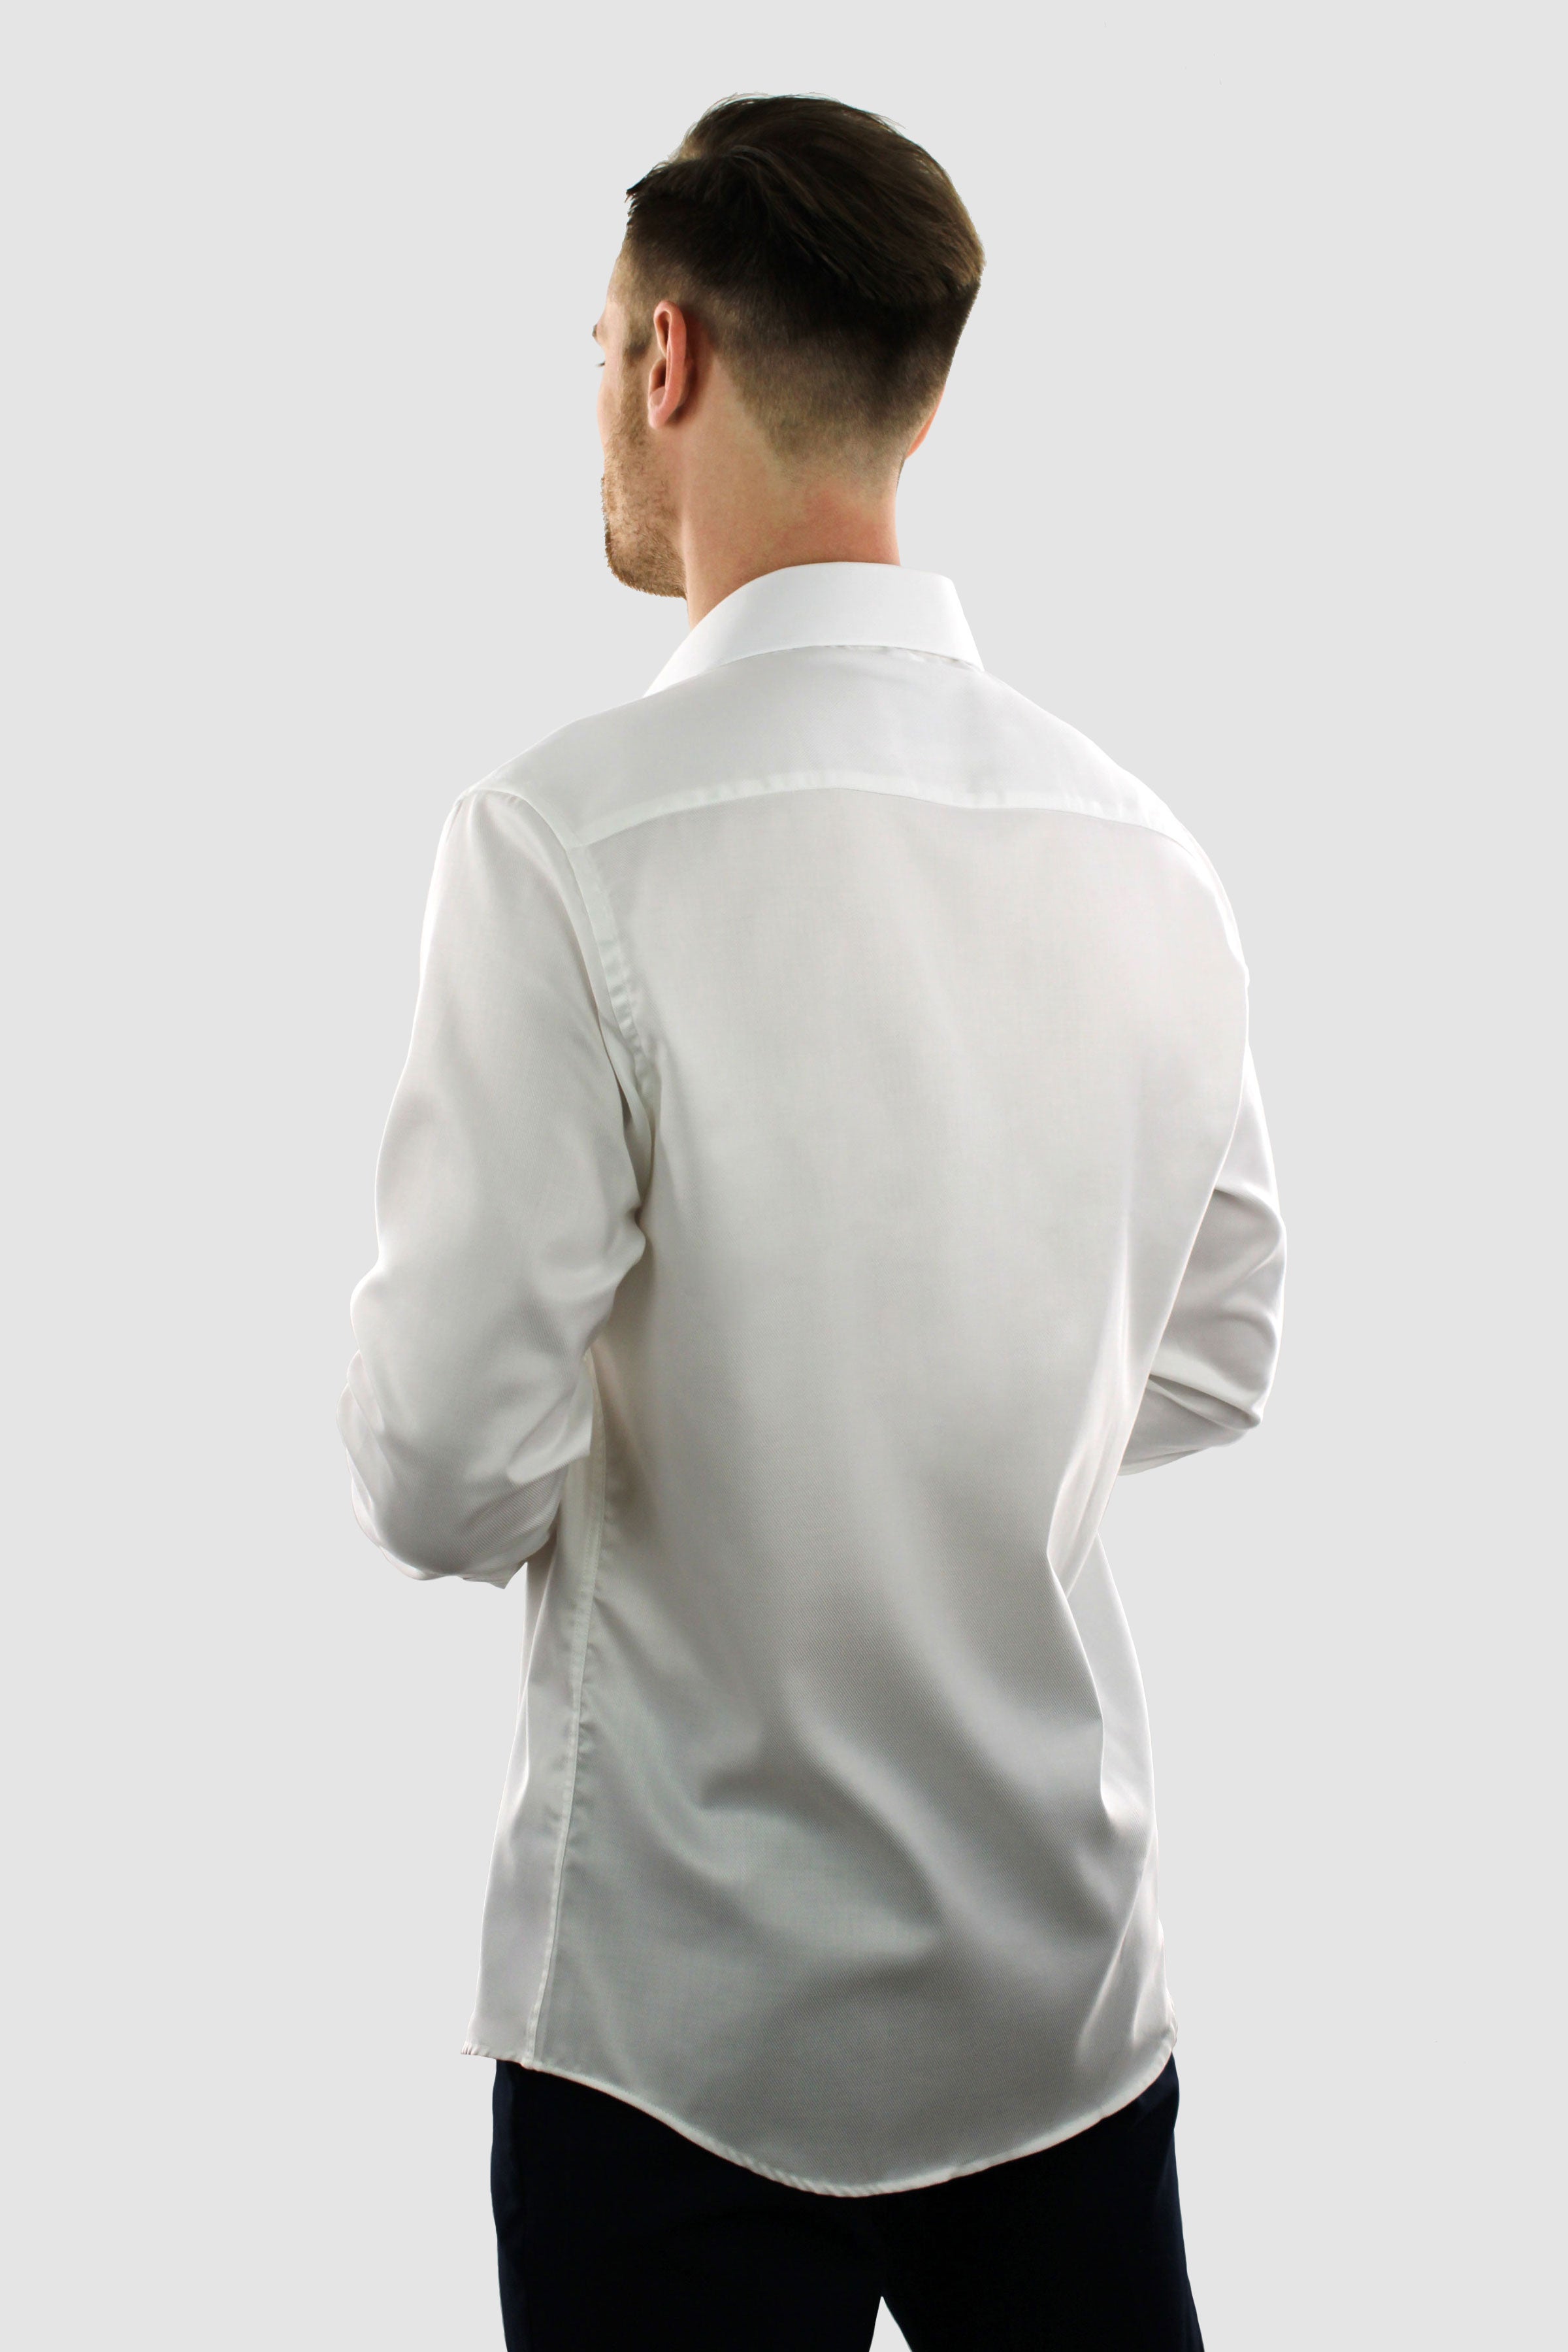 White Shirt - Twill Non Iron